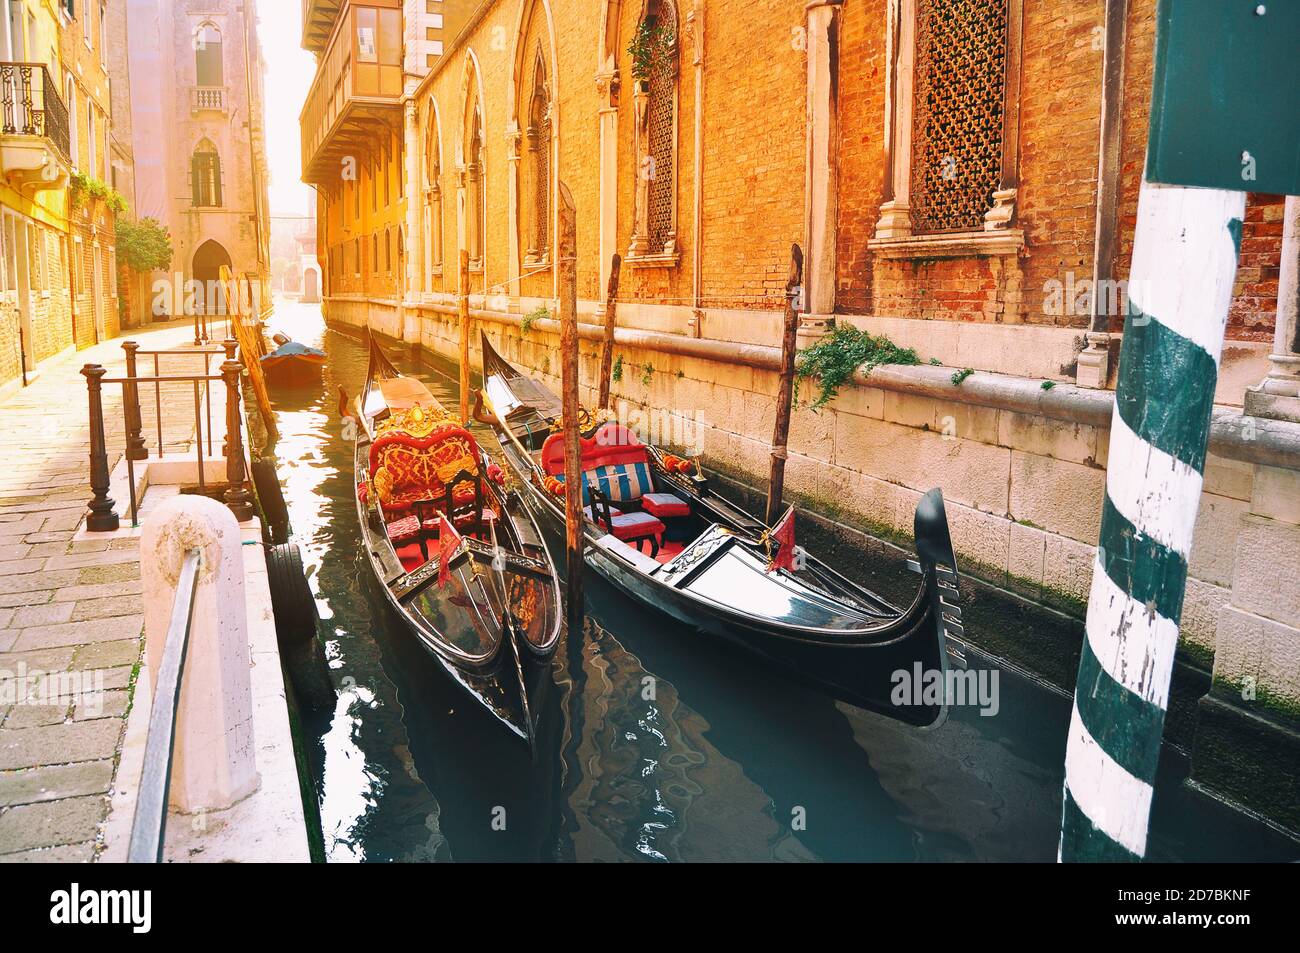 Venise, Italie Banque D'Images